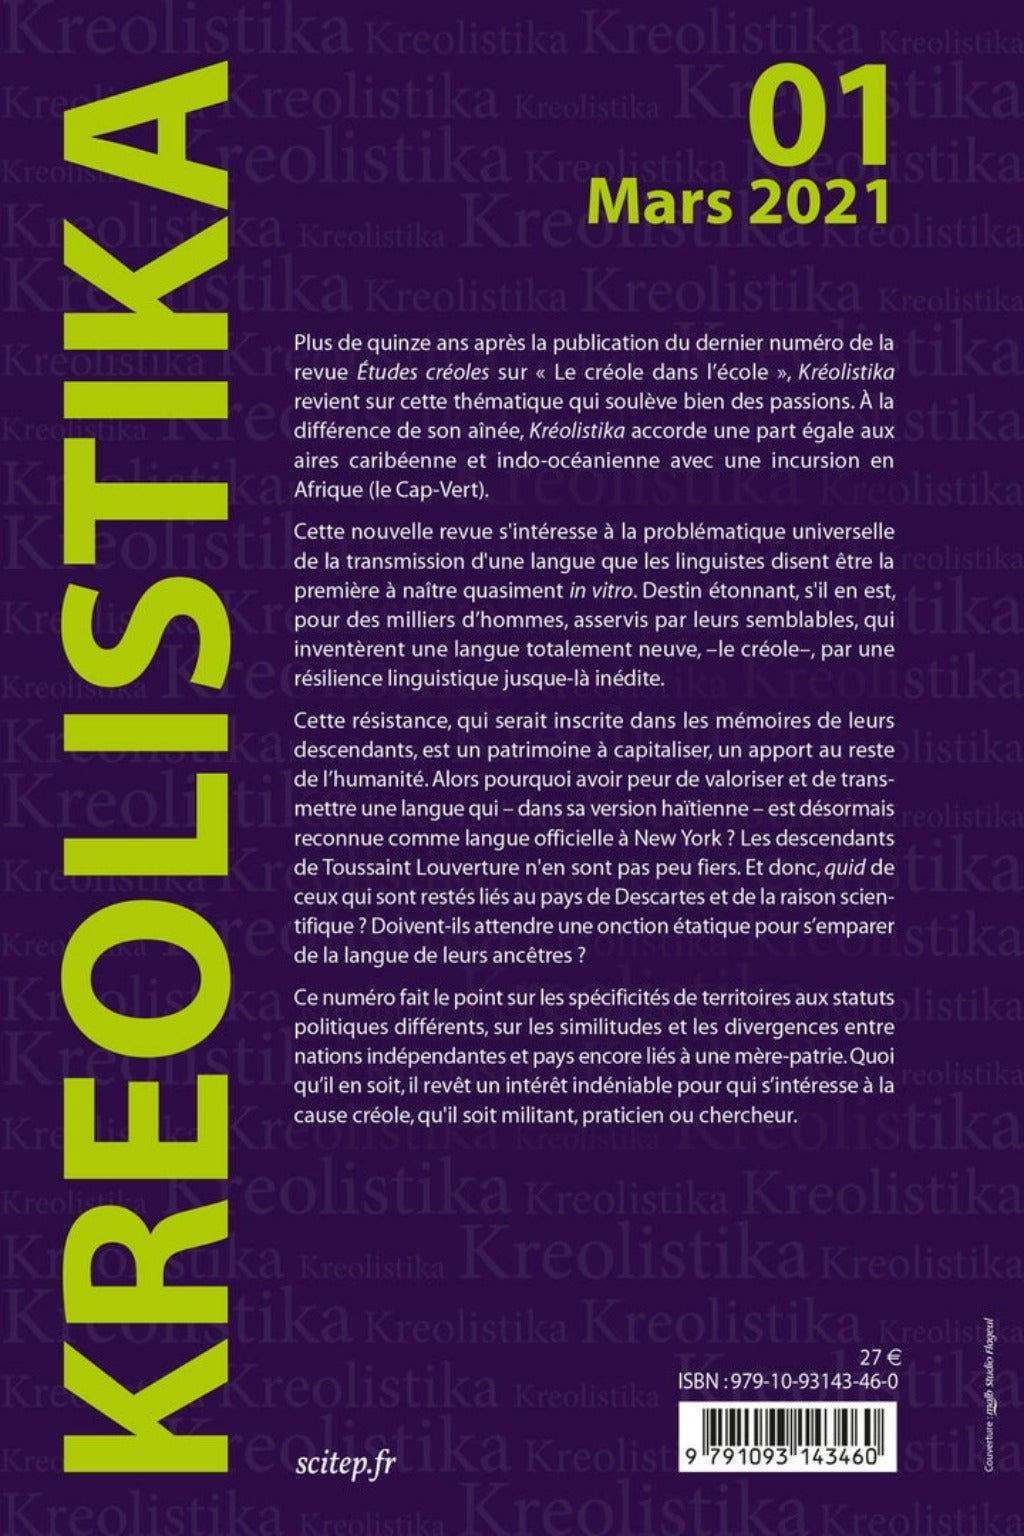 Quatrième de couverture du livre Kreolistika 1 éditeur SCITEP édition auteur Max Bélaise